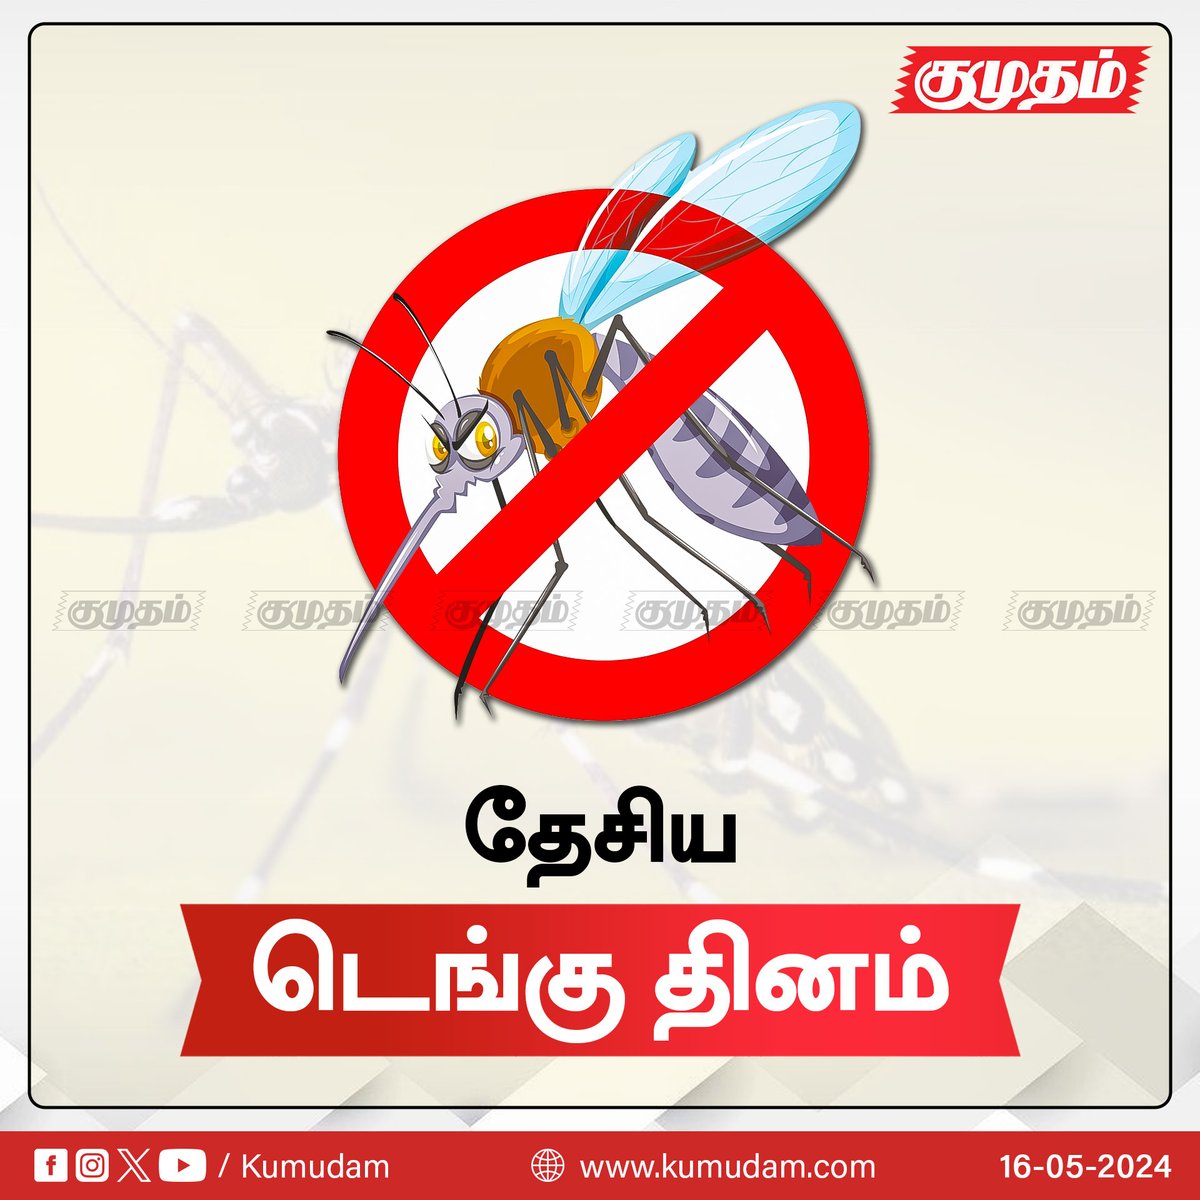 தேசிய டெங்கு தினம் இன்று.. kumudam.com | #NationalDengueDay | #Dengueawareness | #Healthcare